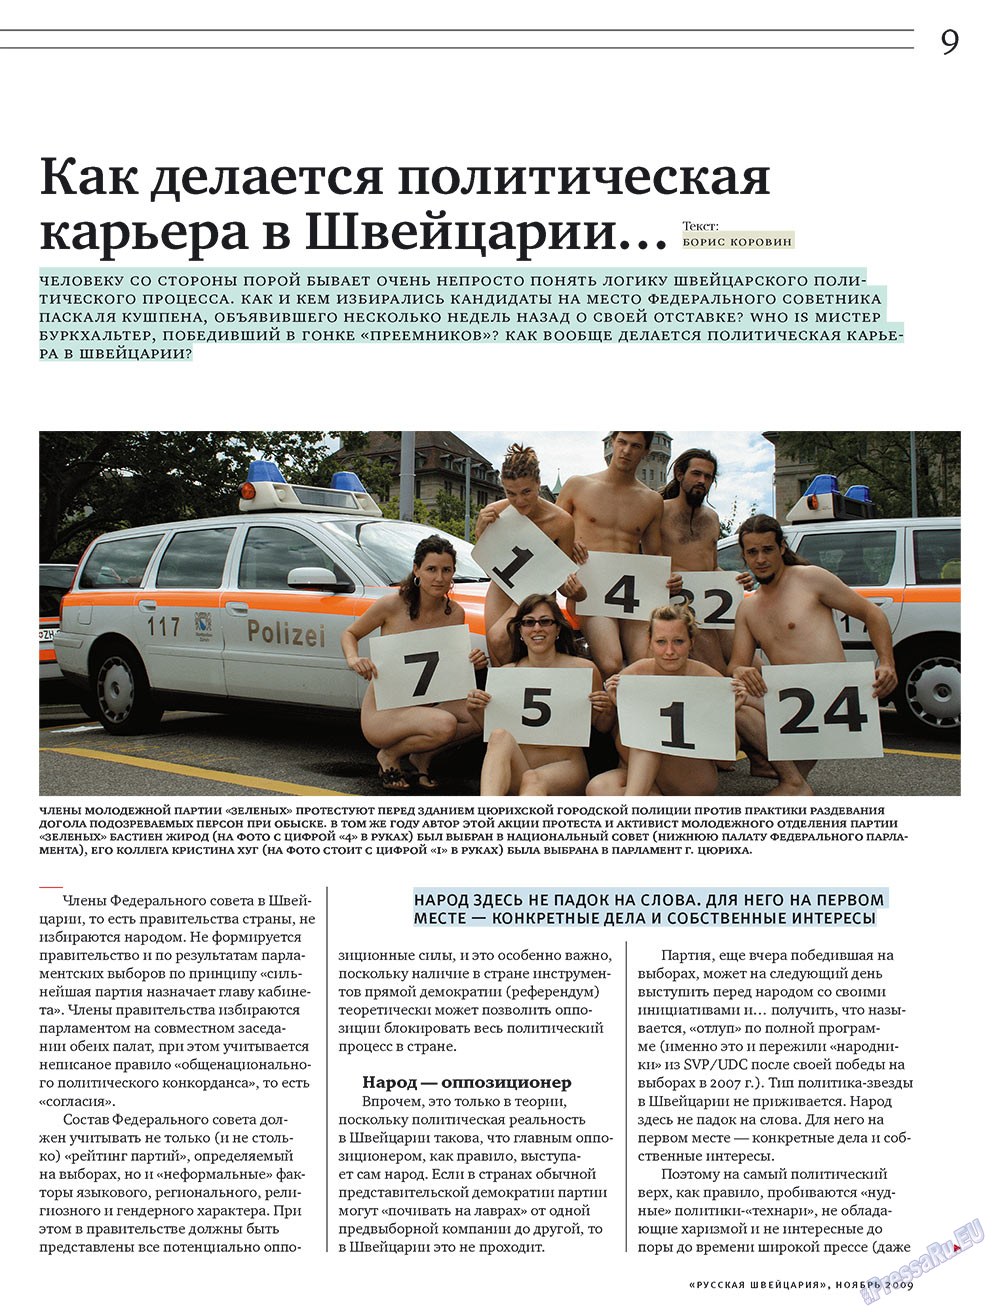 Русская Швейцария, журнал. 2009 №10 стр.9